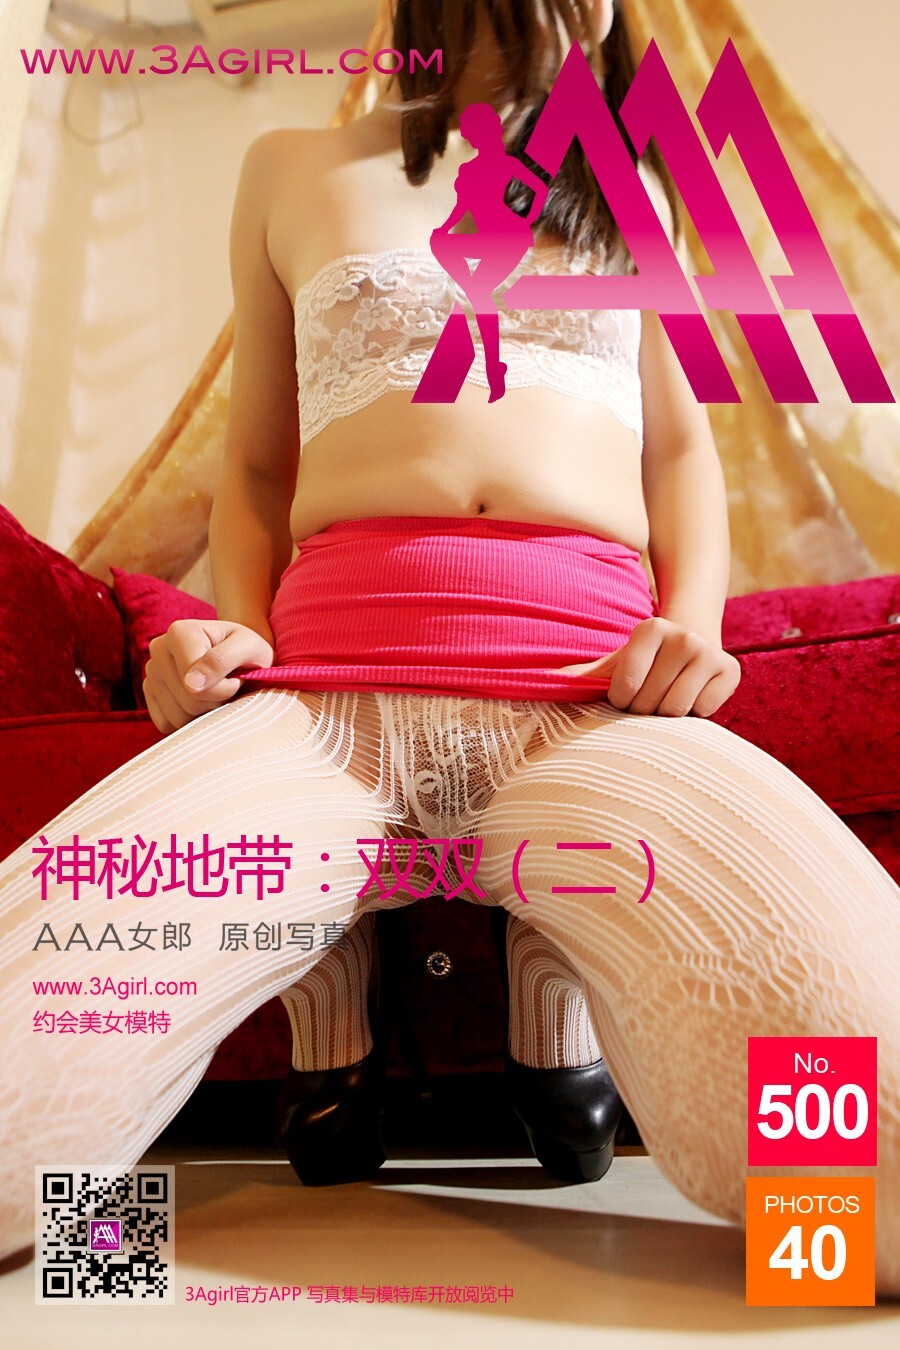 [3agirl] 2015.10.26 No.500 AAA Girl Mystery zone: Shuangshuang (2)